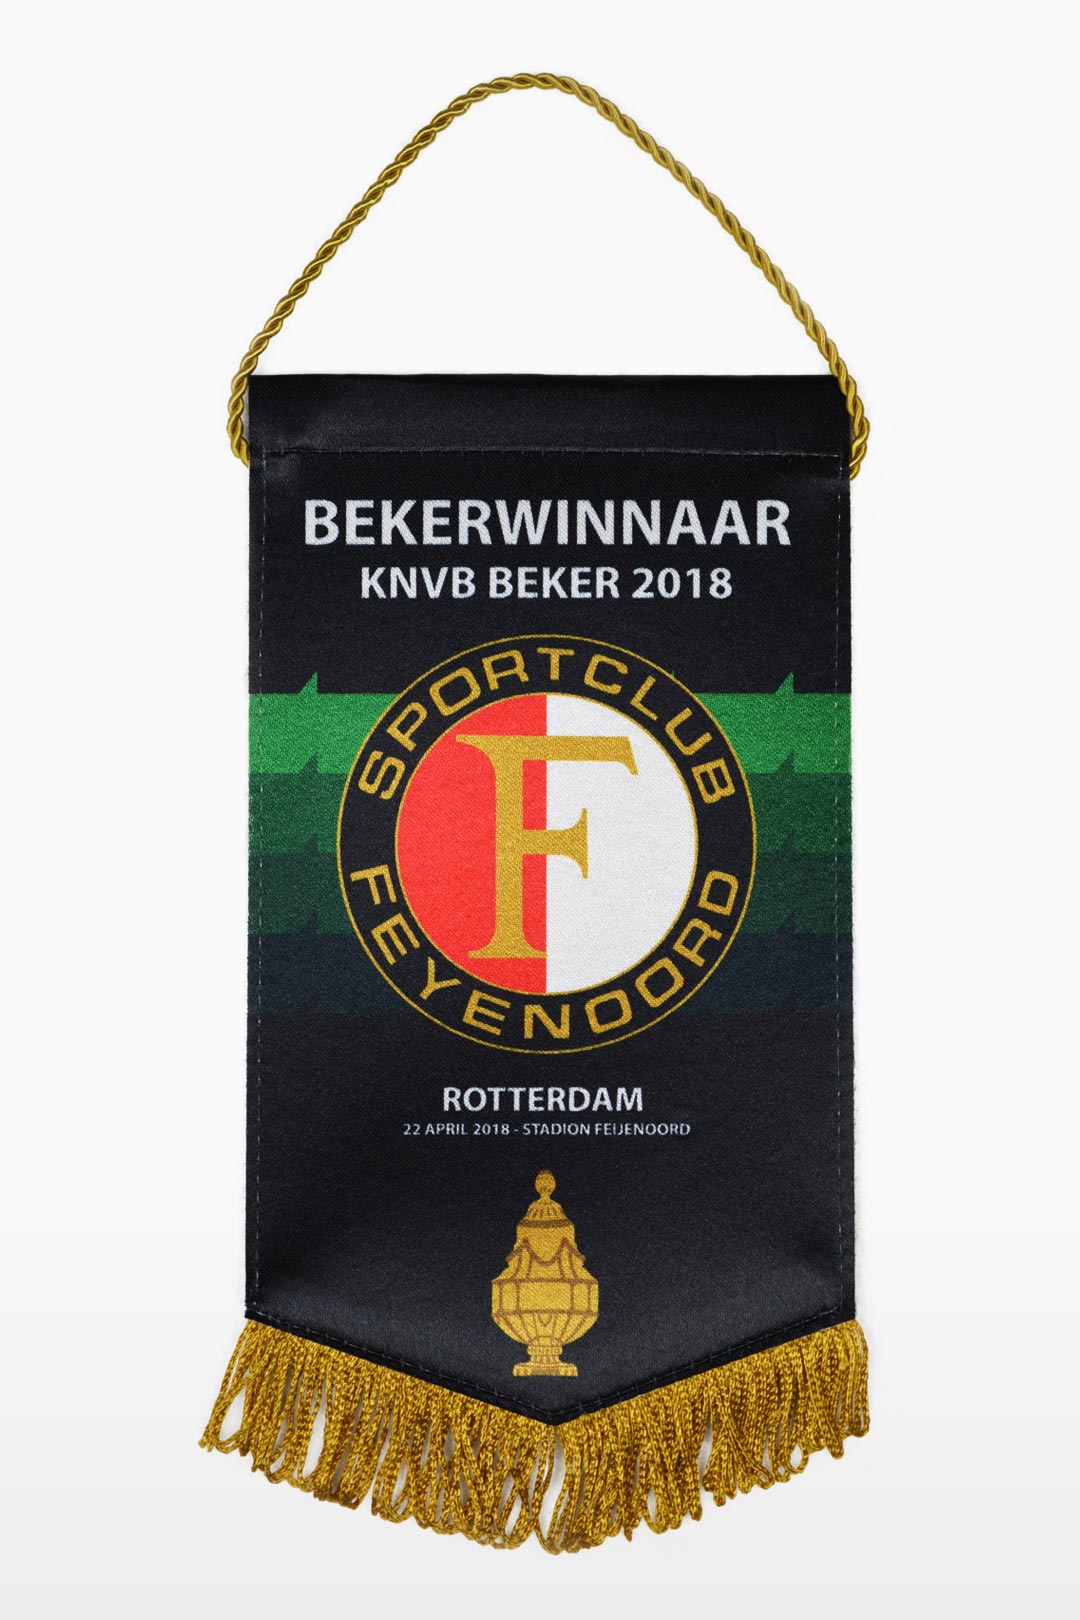 Feyenoord vaantje - Bekerwinnaar 2018 - Feyenoord